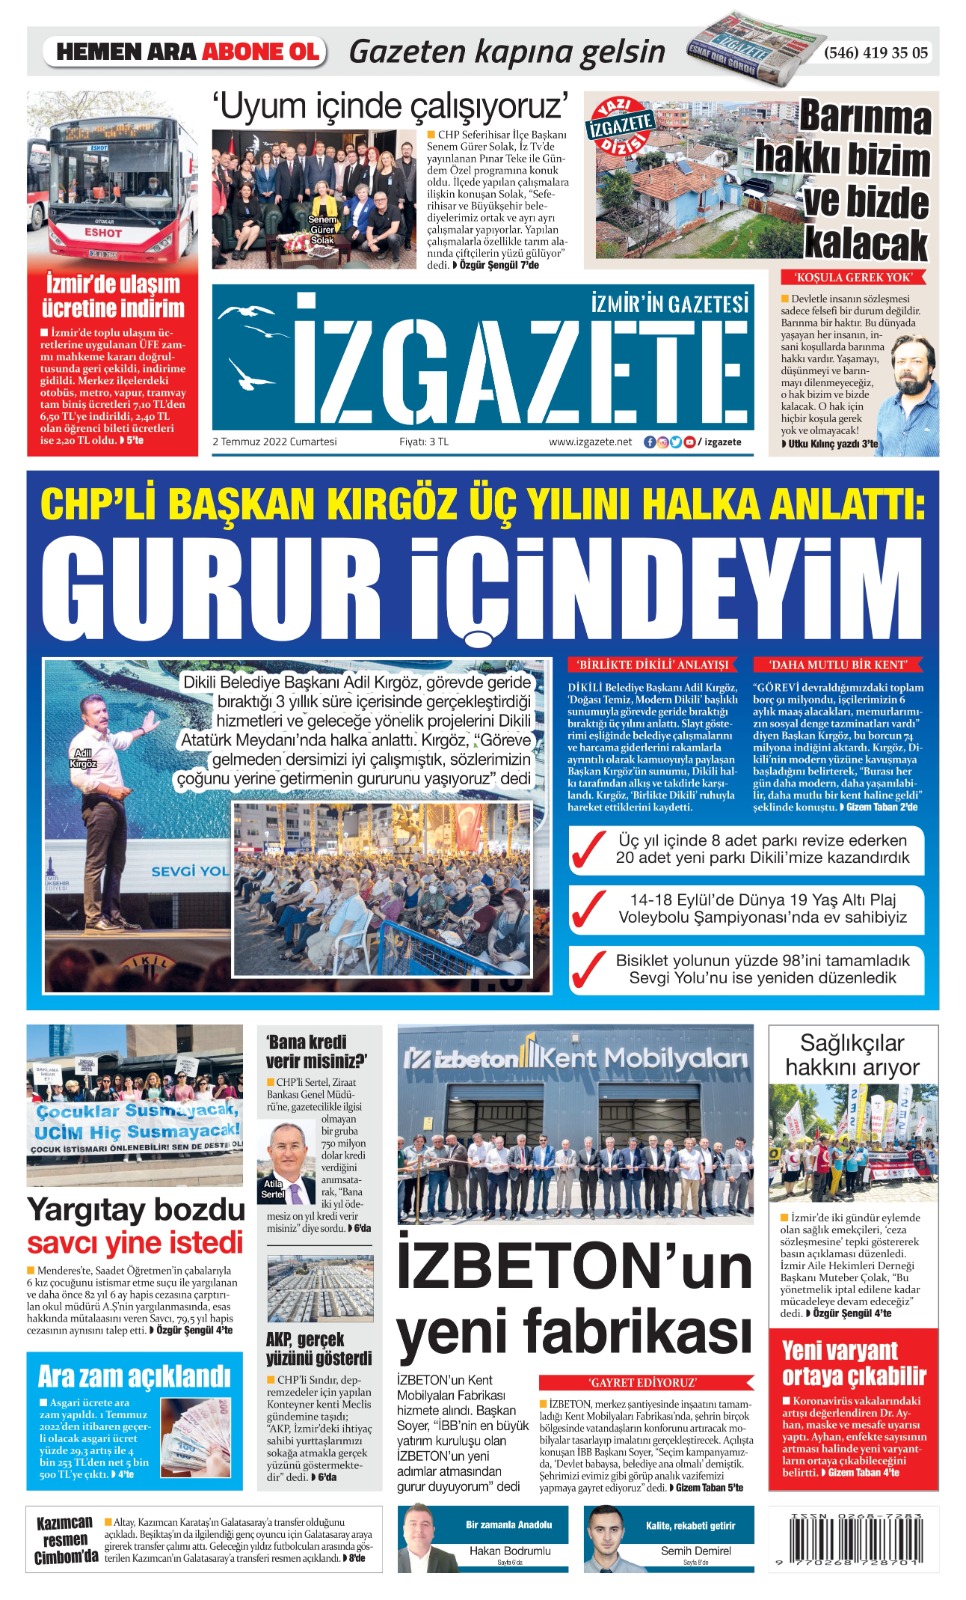 İz Gazete - İzmir'in Gazetesi - 02.07.2022 Manşeti